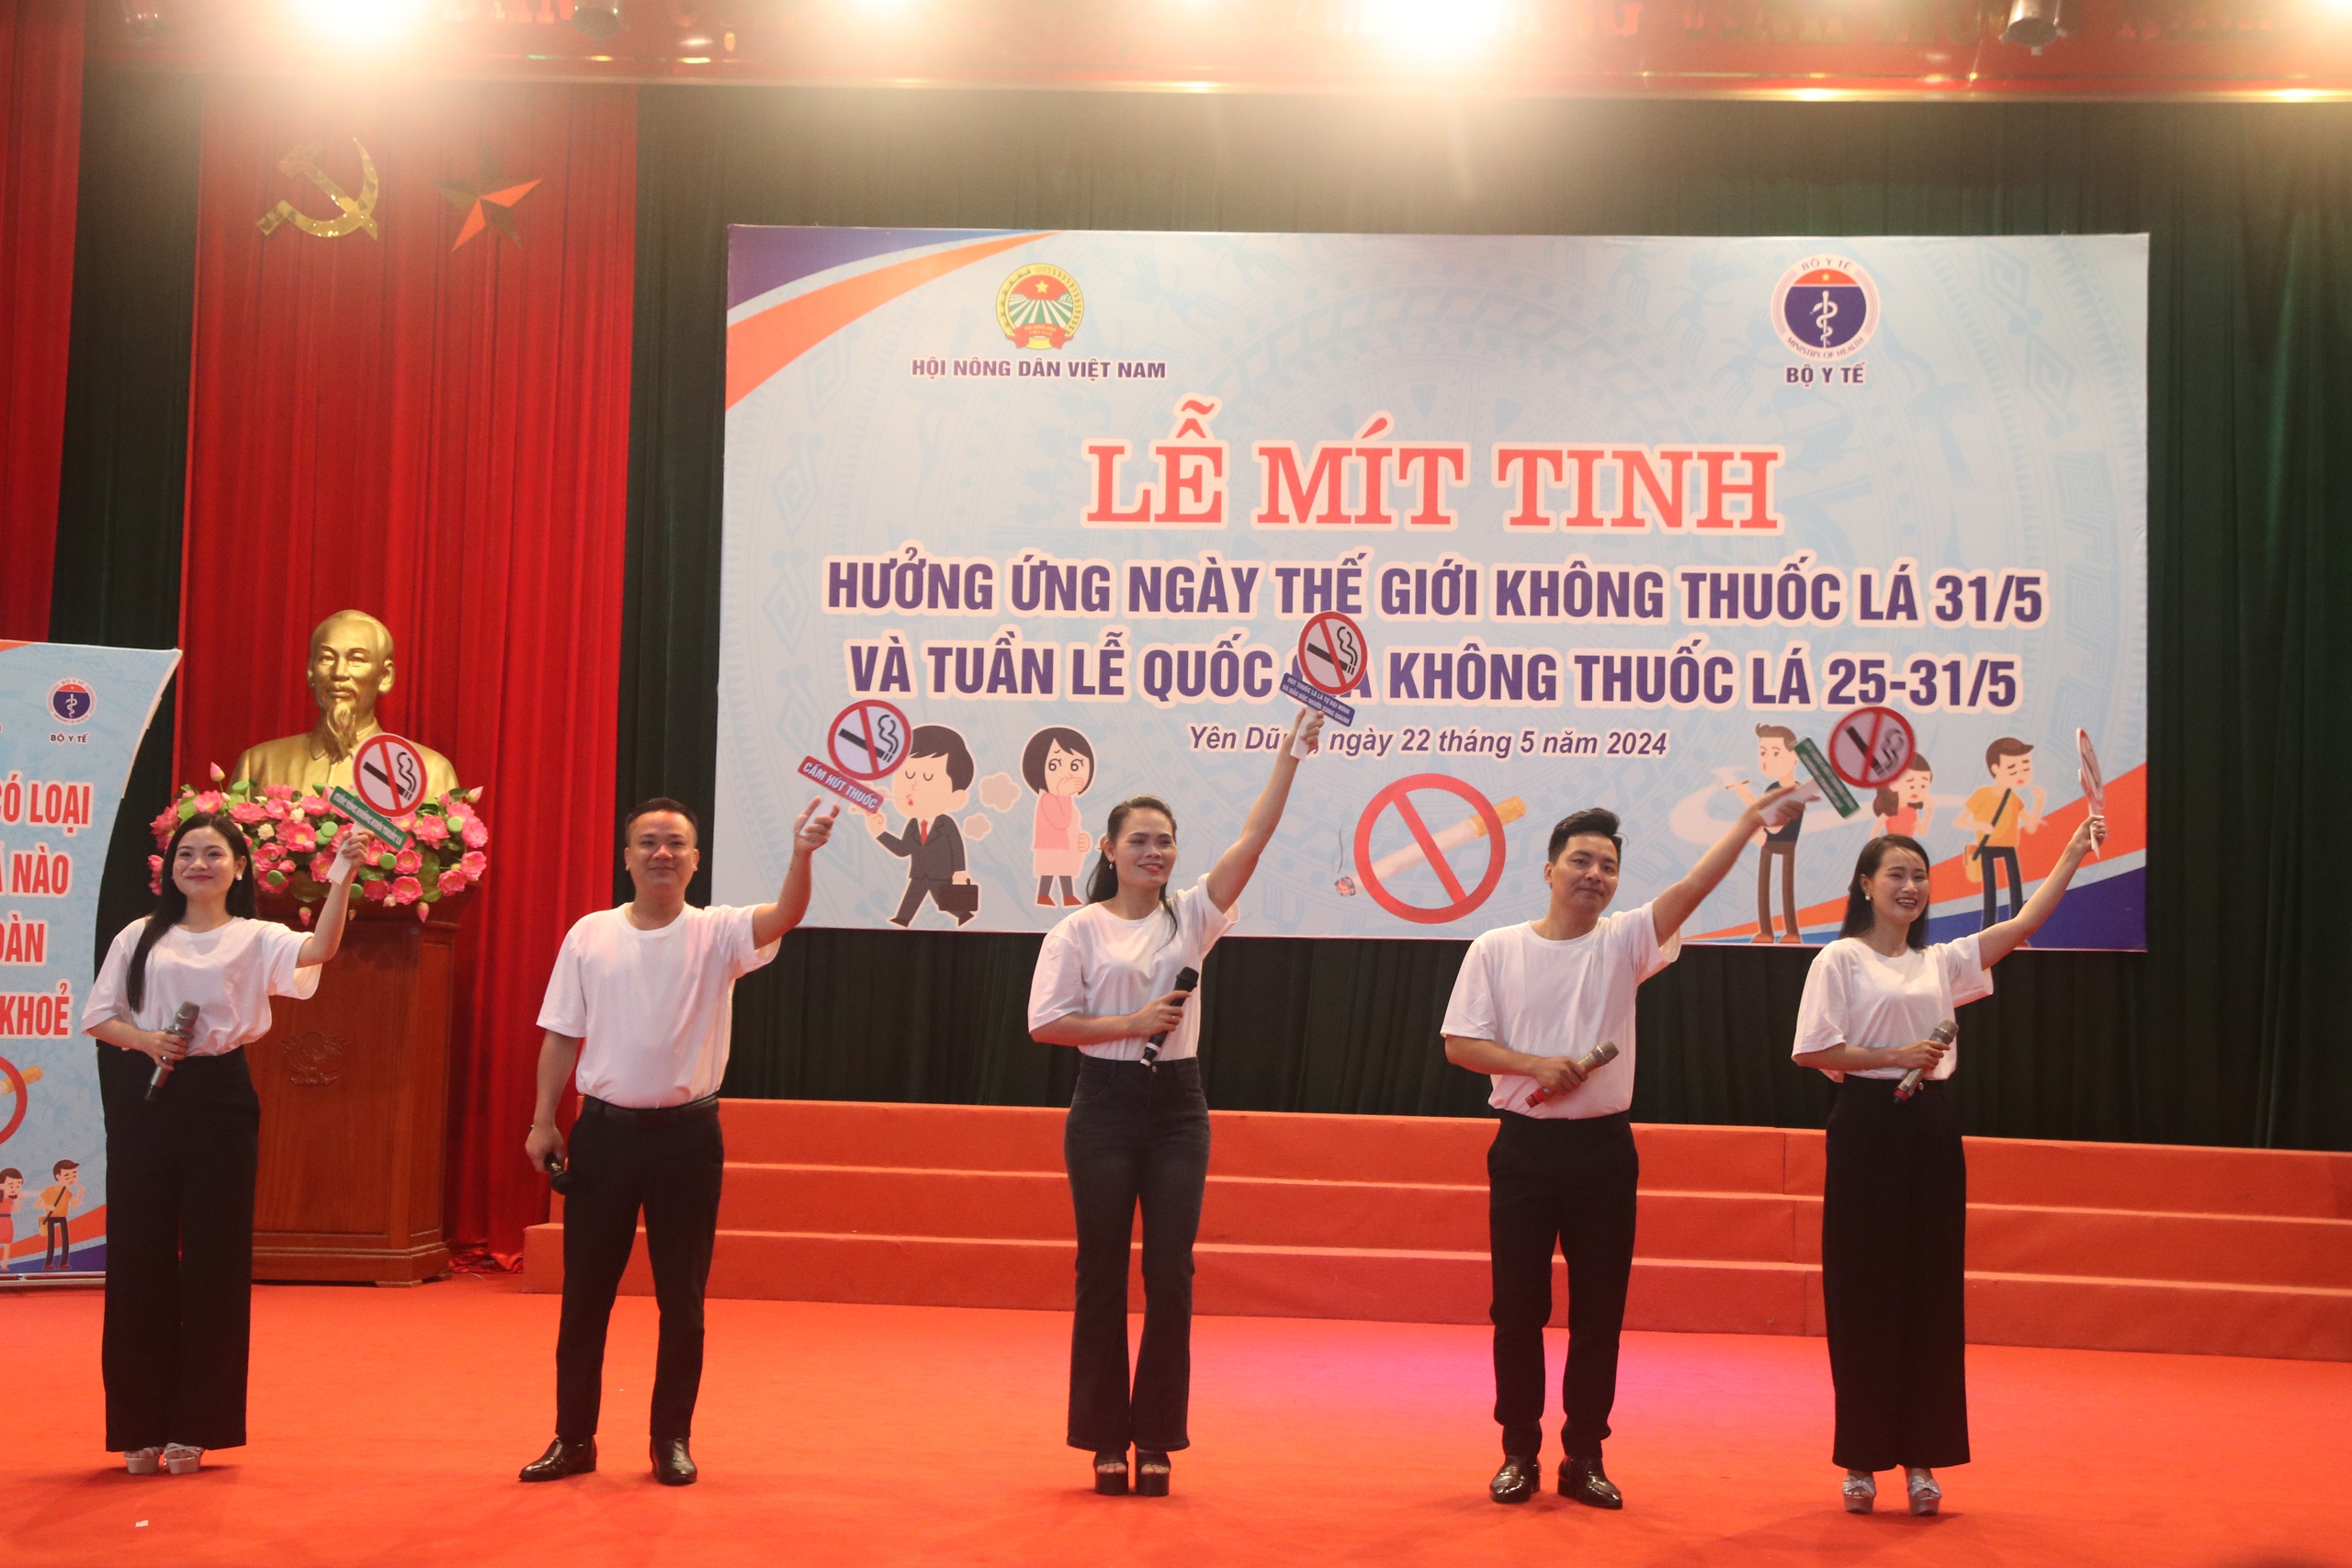 Hội NDVN và Bộ Y tế tổ chức Lễ mít tinh hưởng ứng Ngày Thế giới không thuốc lá tại Bắc Giang- Ảnh 6.